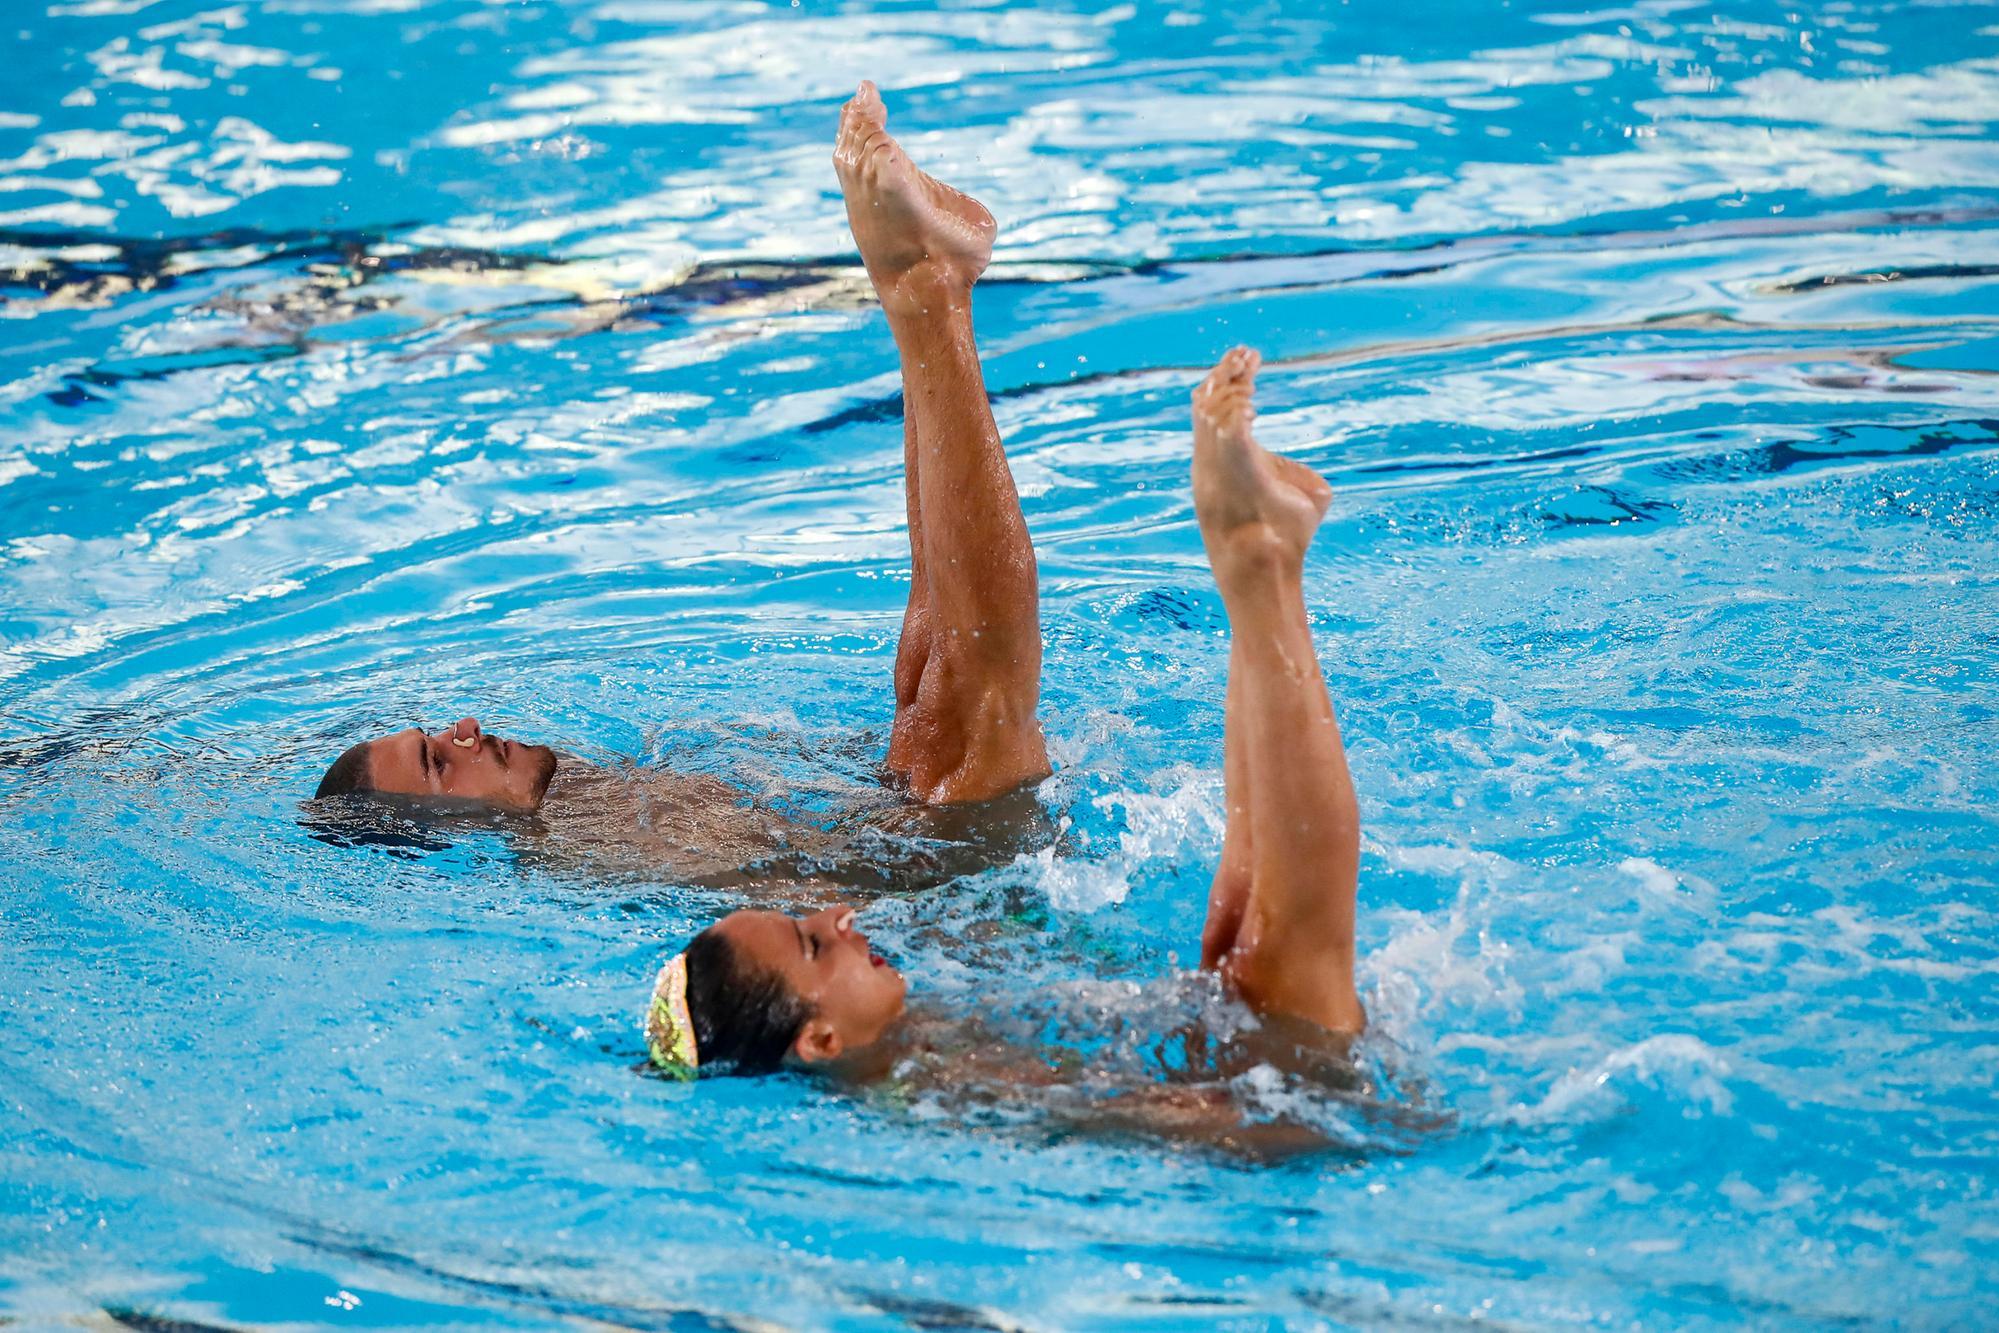 Europei di nuoto, ennesimo oro azzurro: Minisini e Ruggiero vincono nel duo misto libero